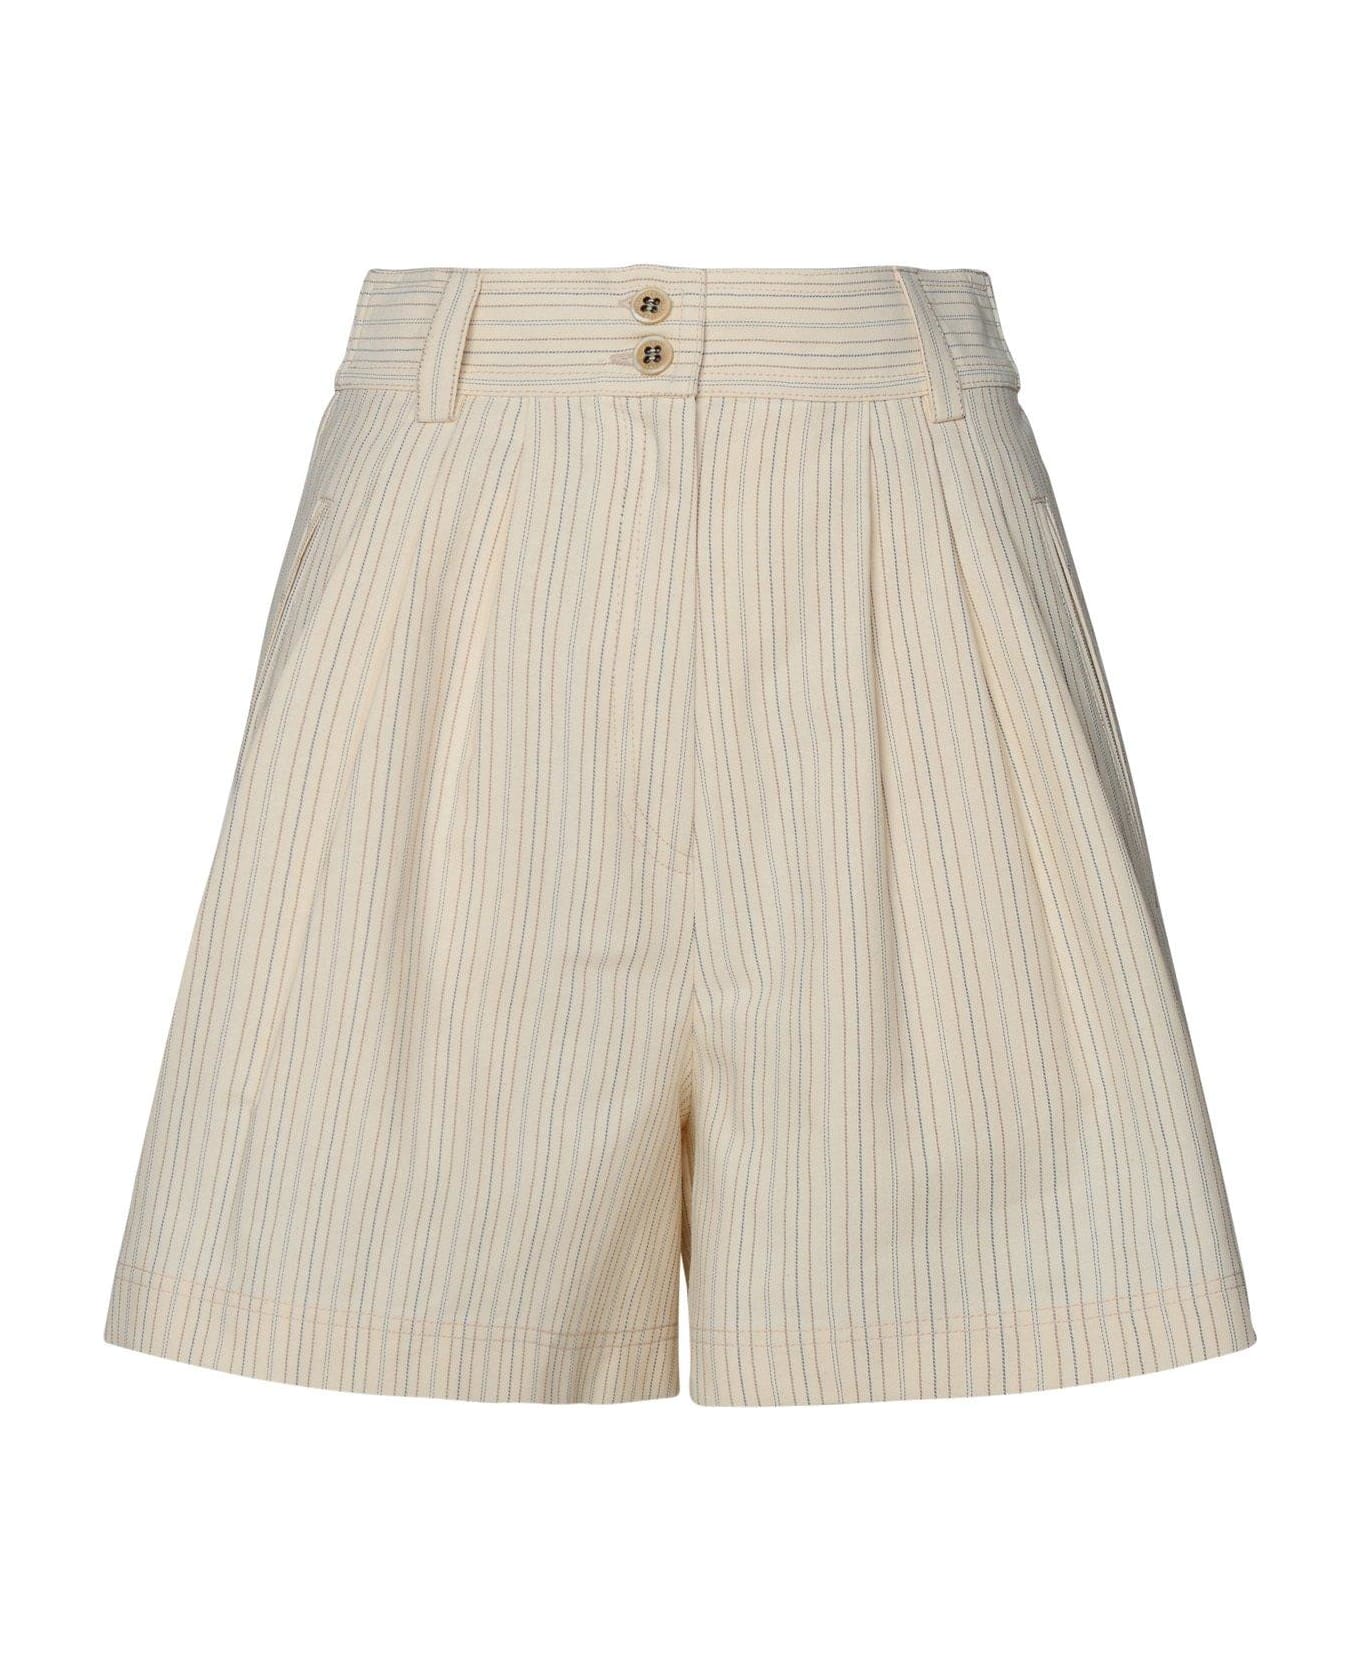 Golden Goose High-waist Striped Shorts - Ecru/eclipse/gold ショートパンツ